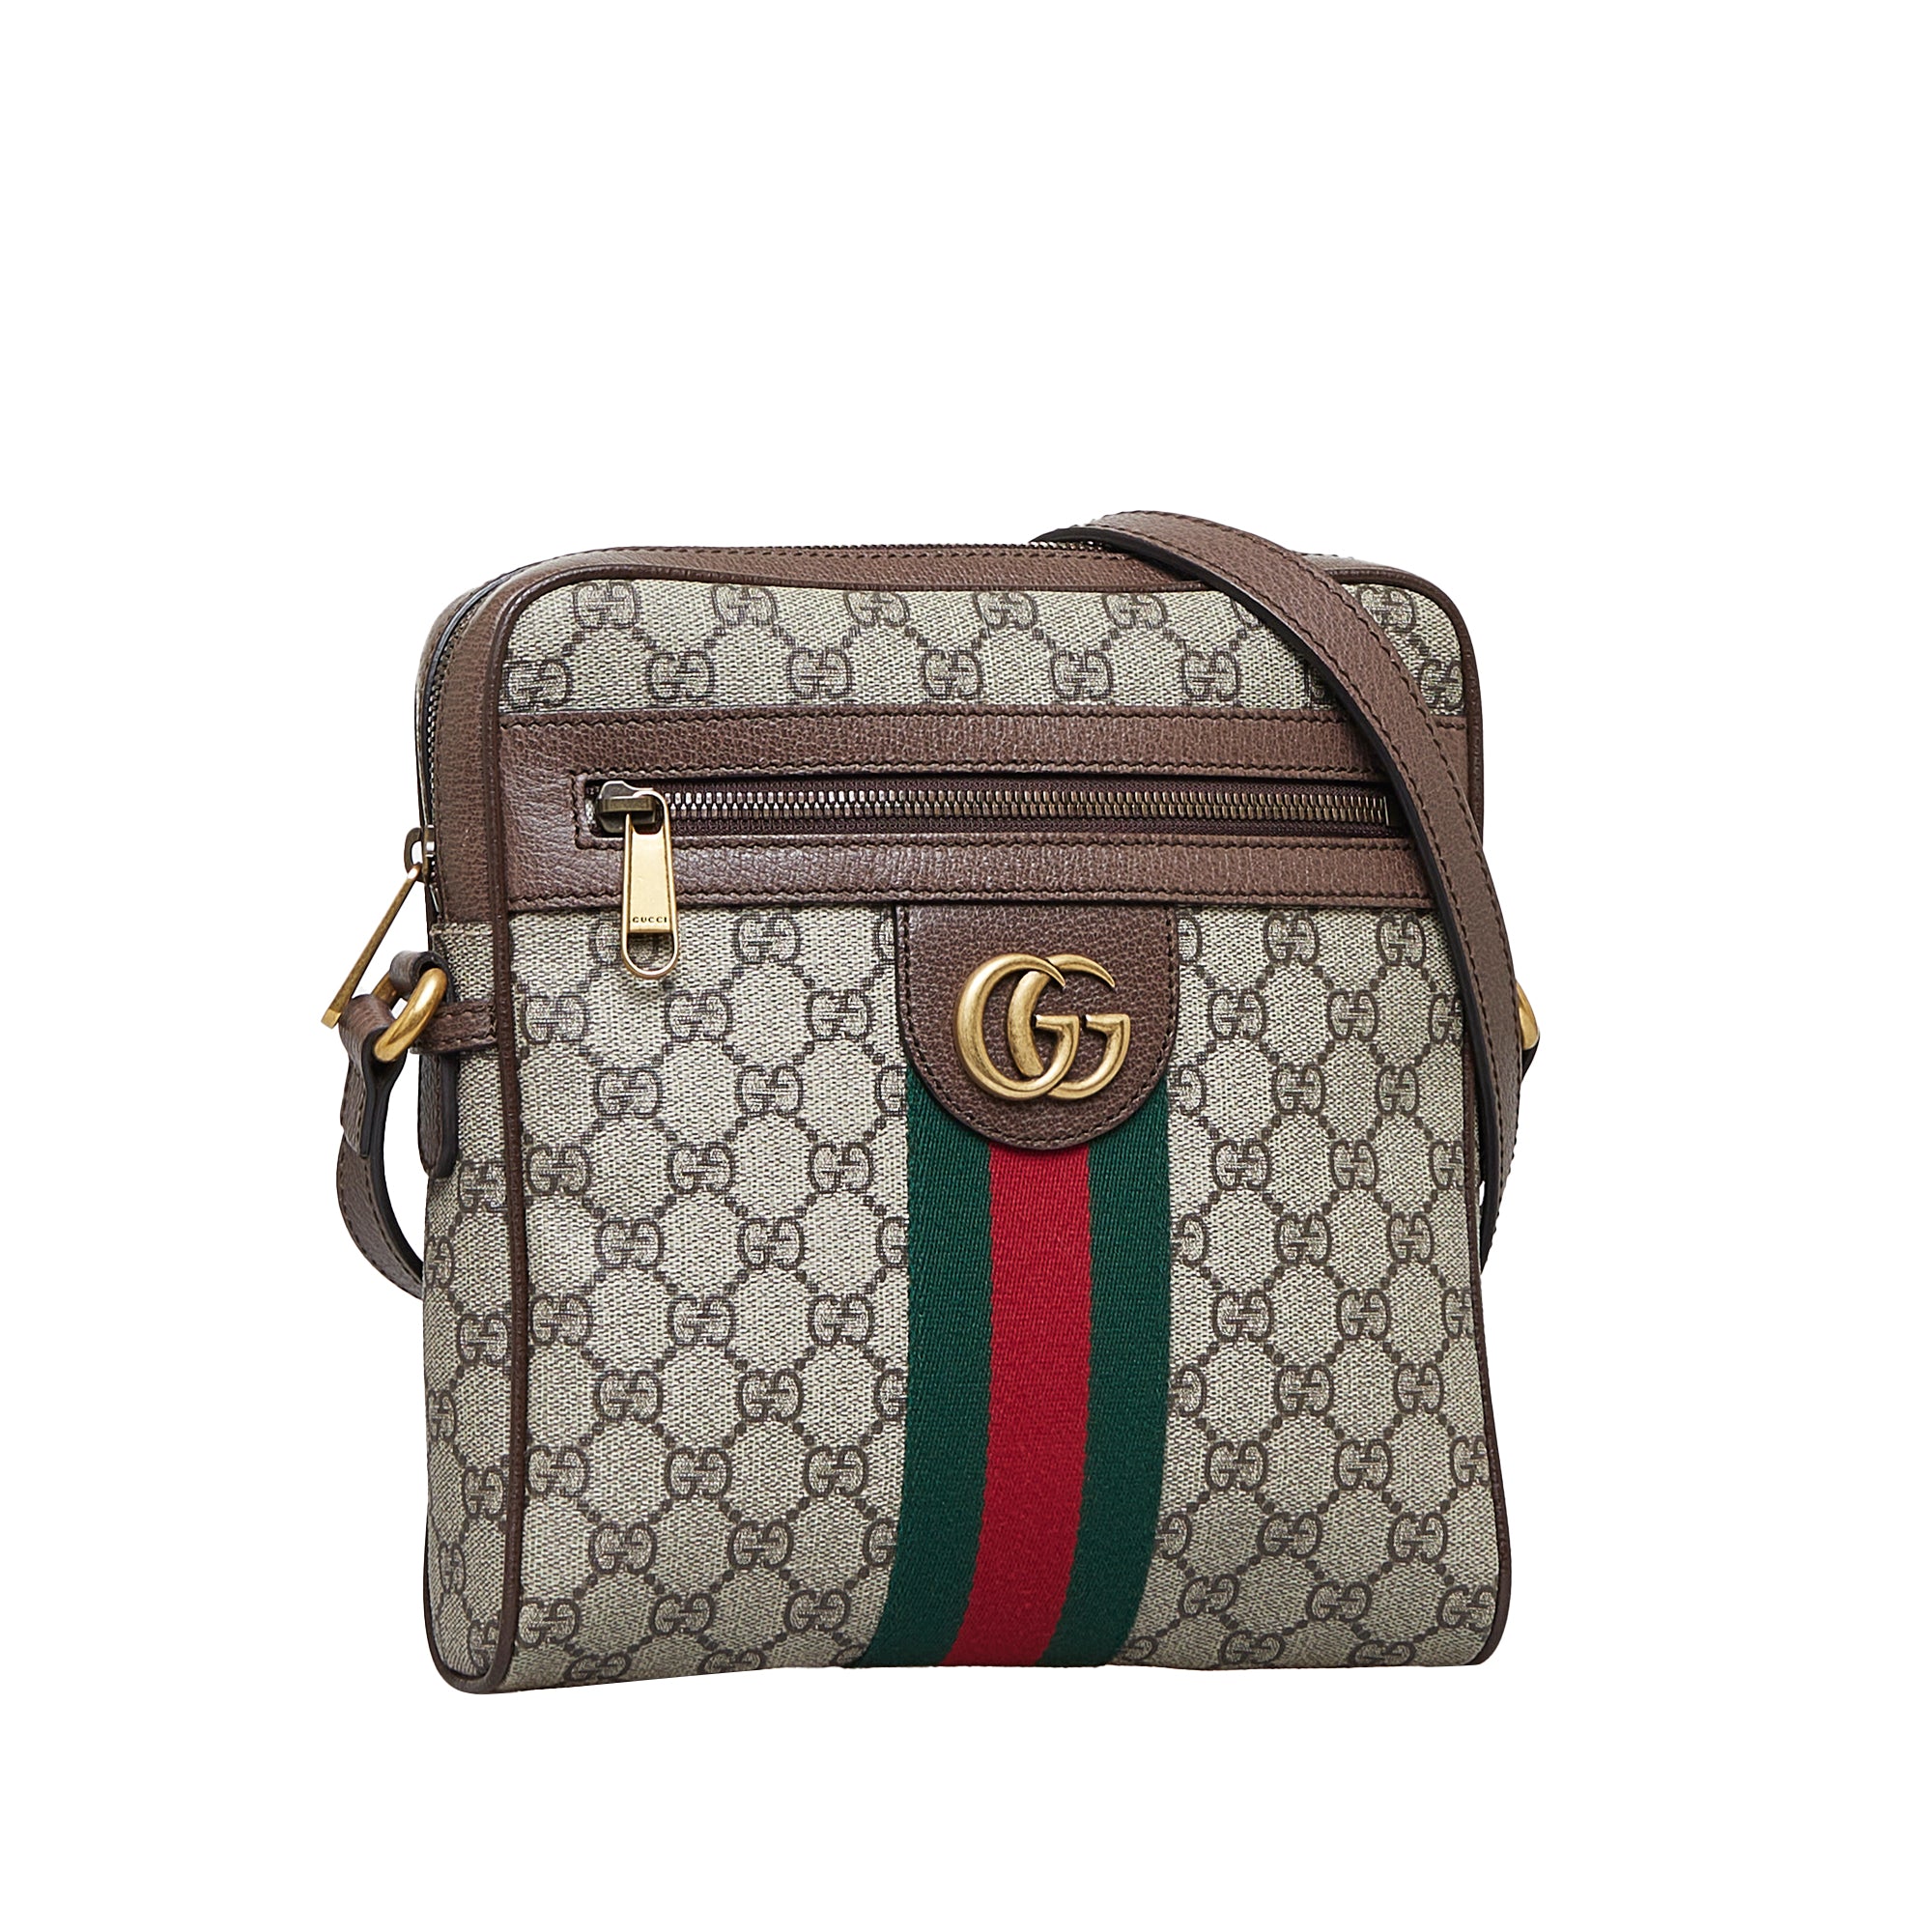 Gucci, Bags, Gucci Bag Authentic Original Receipt